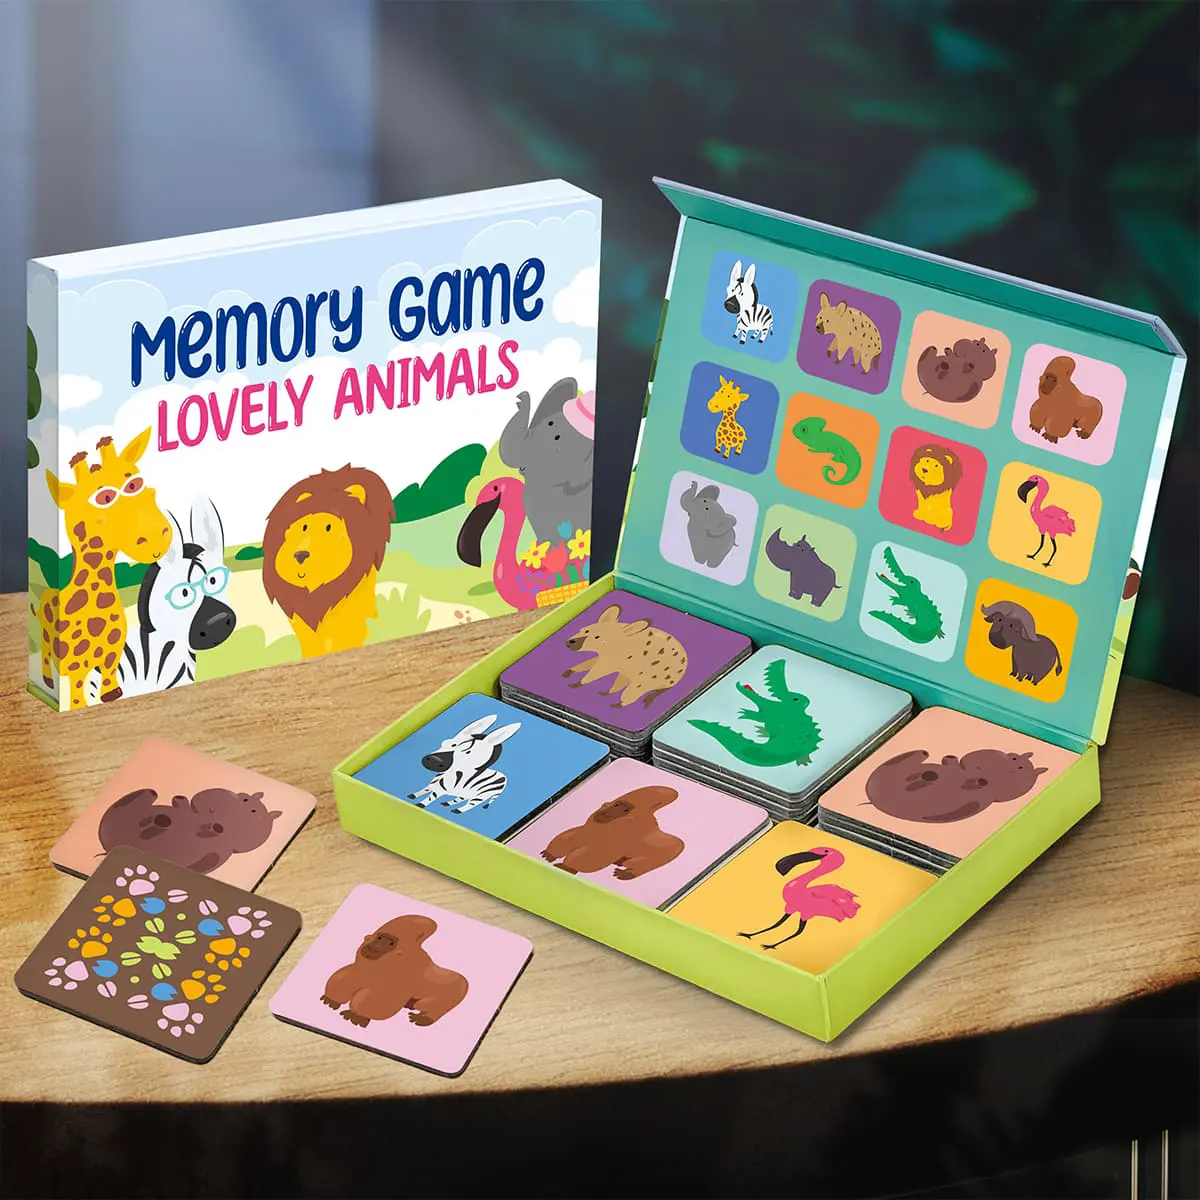 Conjunto de juego de memoria de animales encantadores